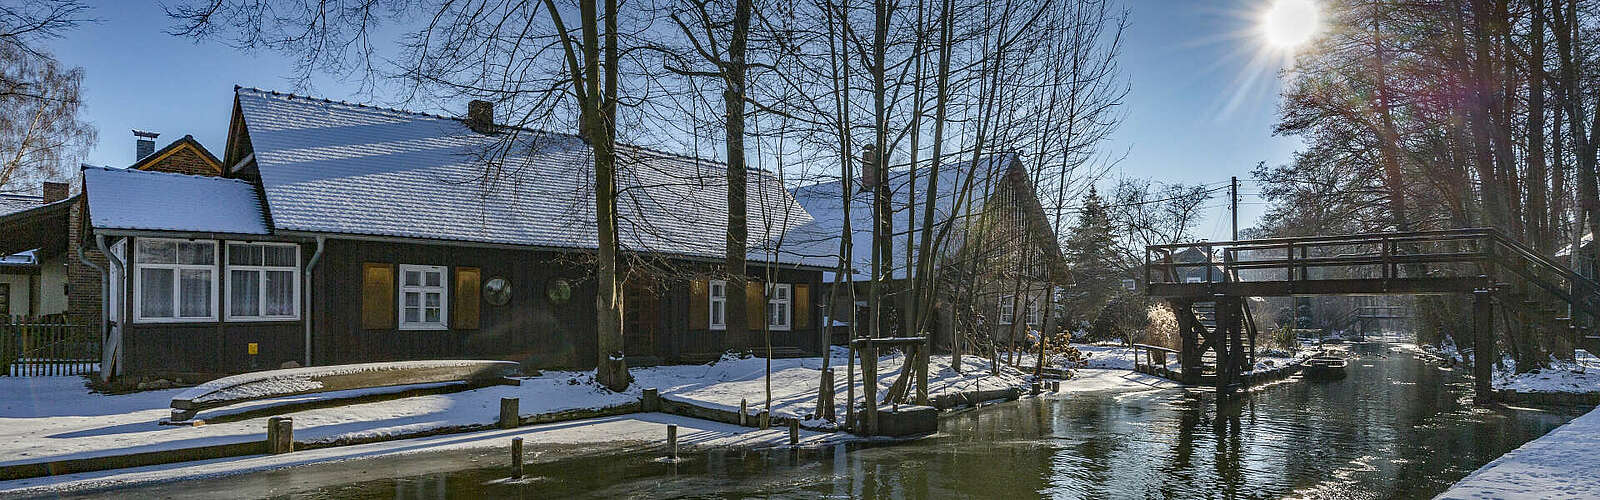 Winterliches Lehde im Spreewald,
        
    

        Picture: TMB-Fotoarchiv/Steffen Lehmann